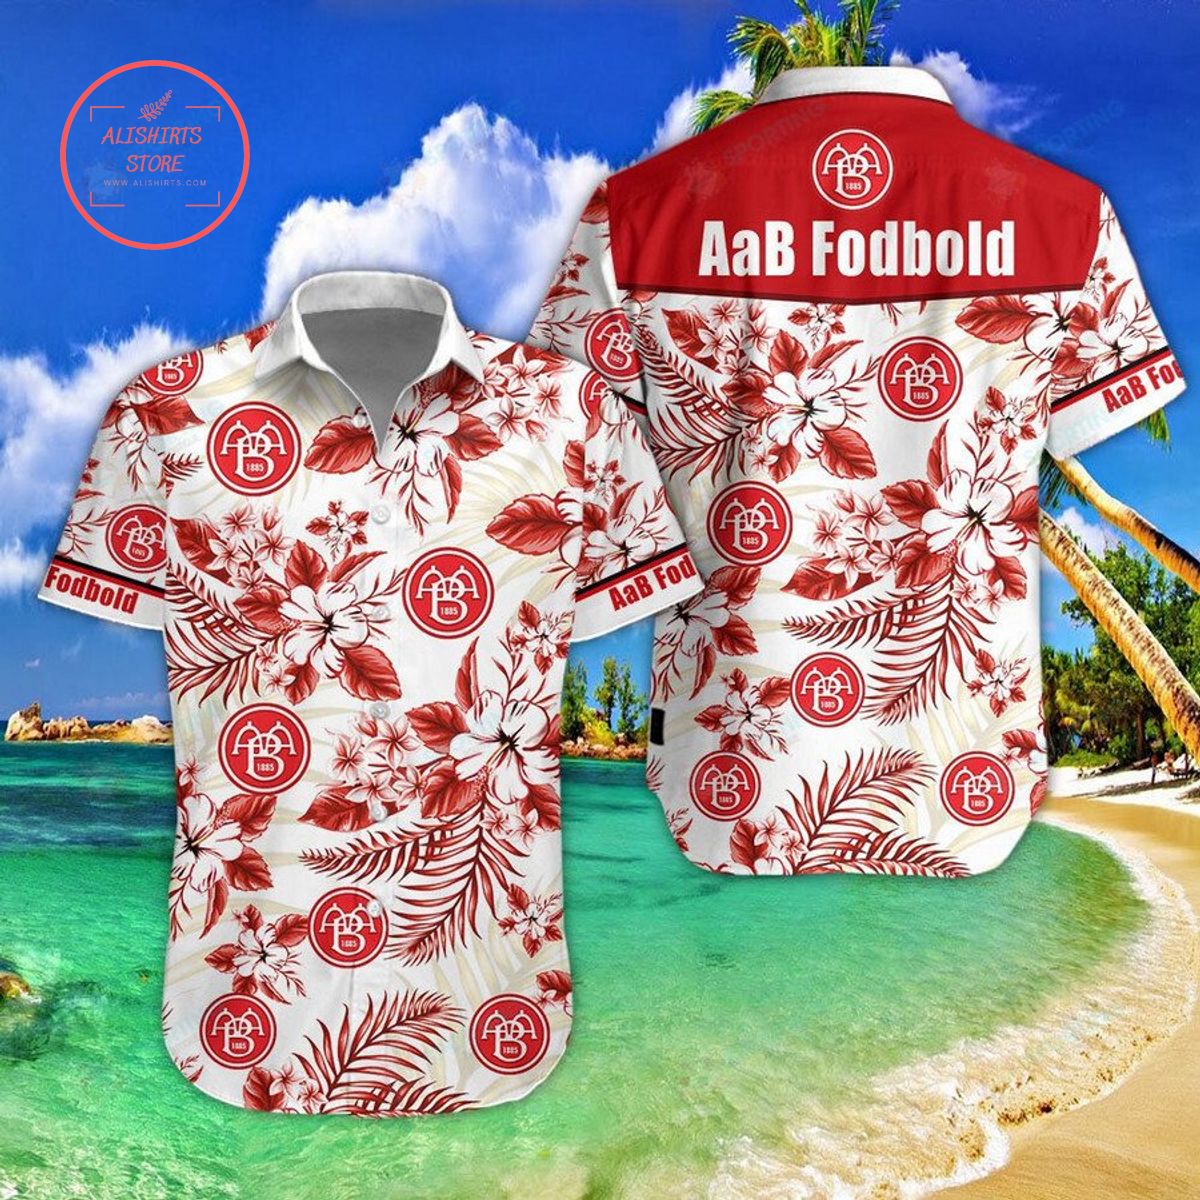 AaB Fodbold Hawaiian Shirt and Shorts